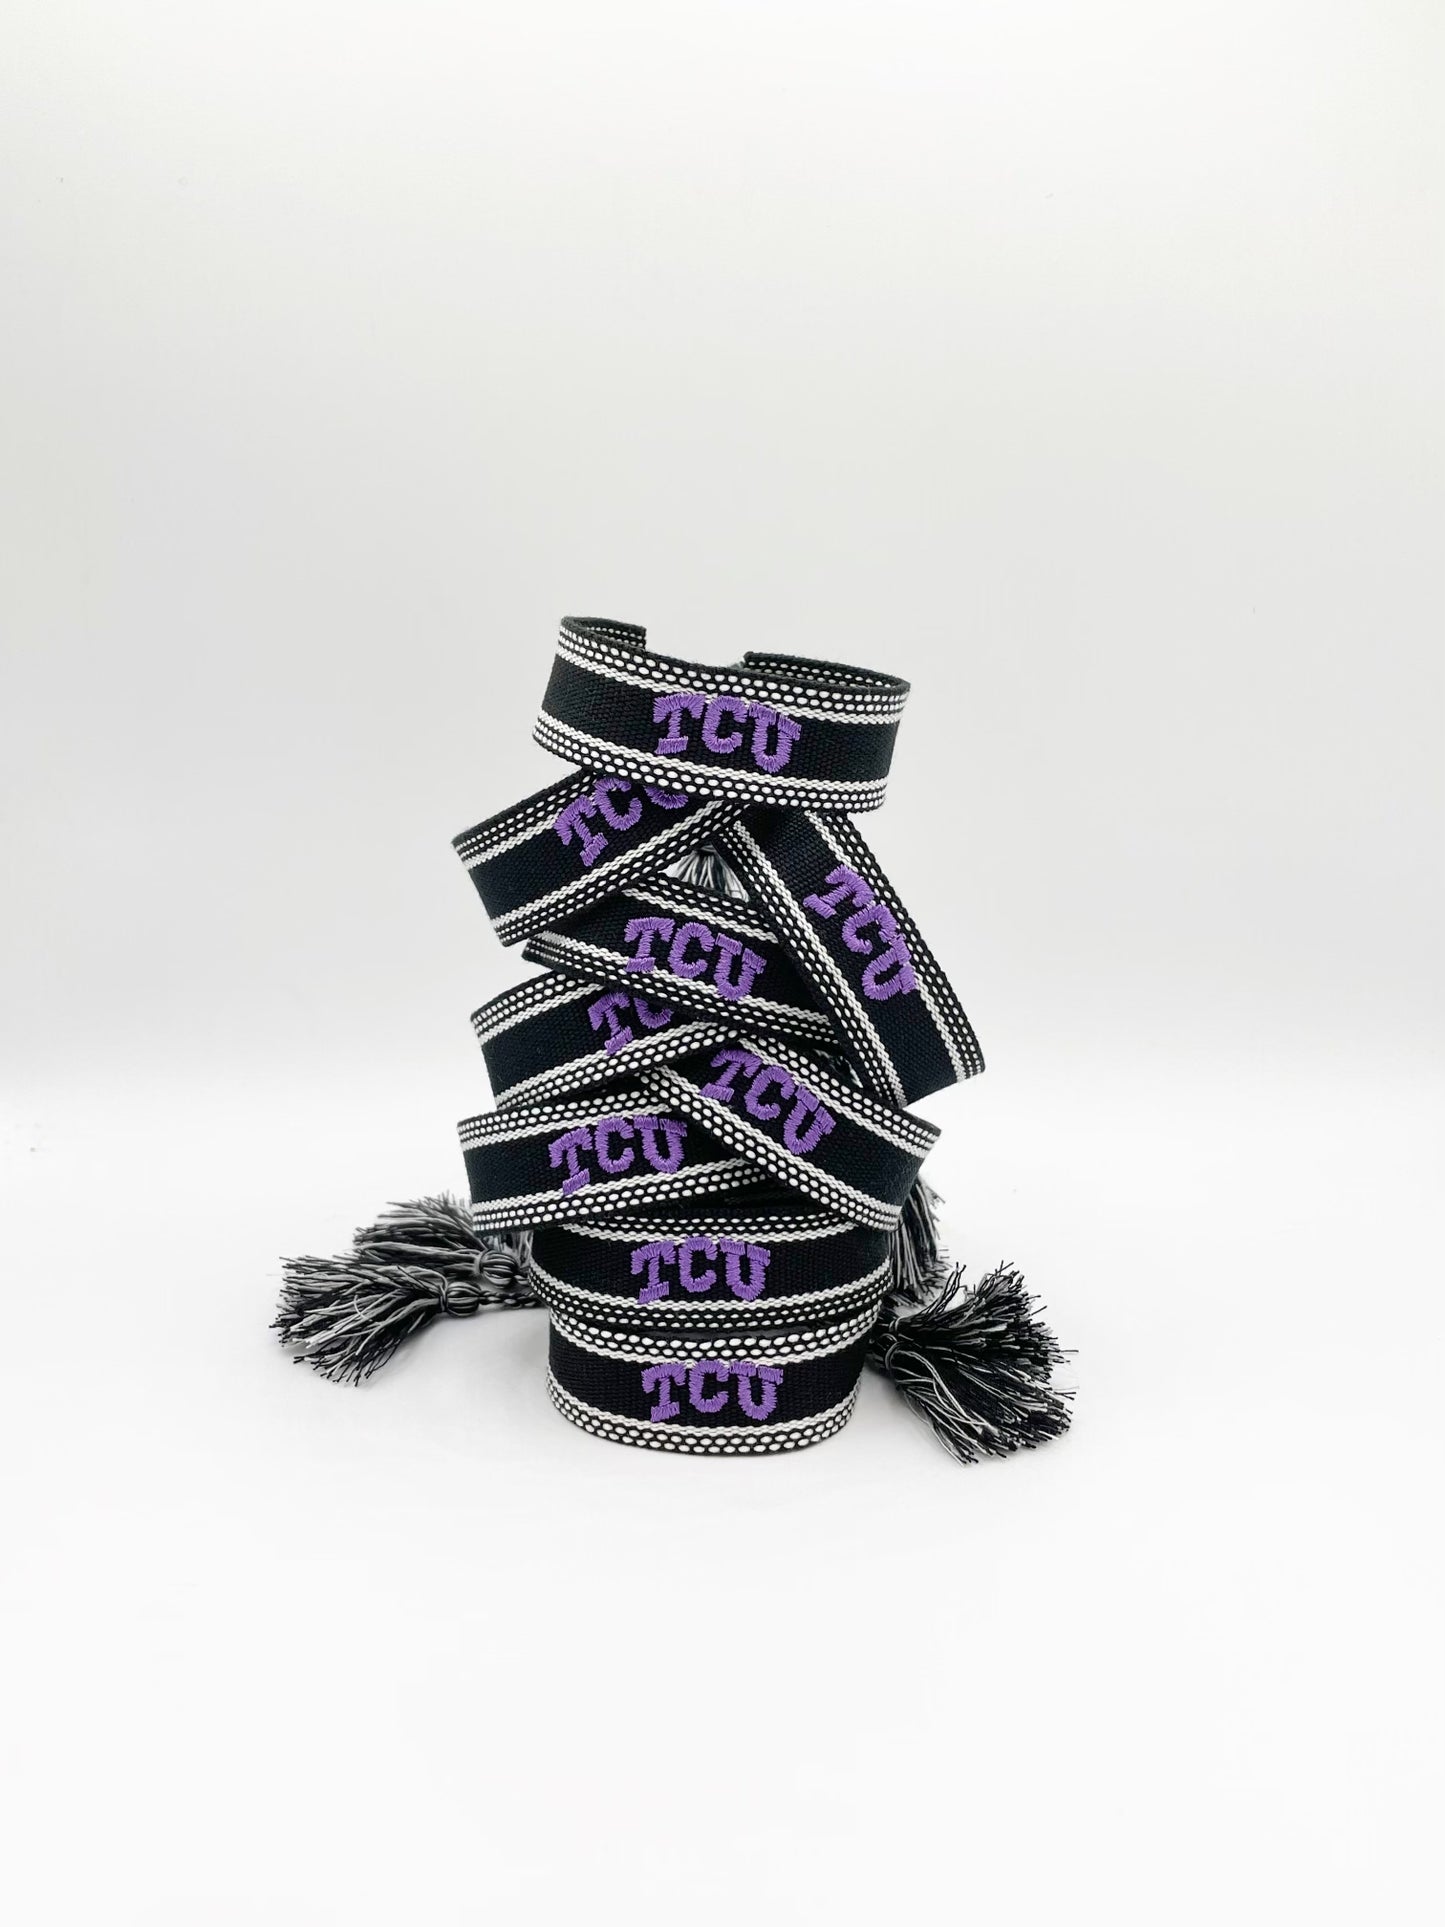 BLACKOUT - Limited Edition Peggy Falkenberg Game Day Tassel Bracelets